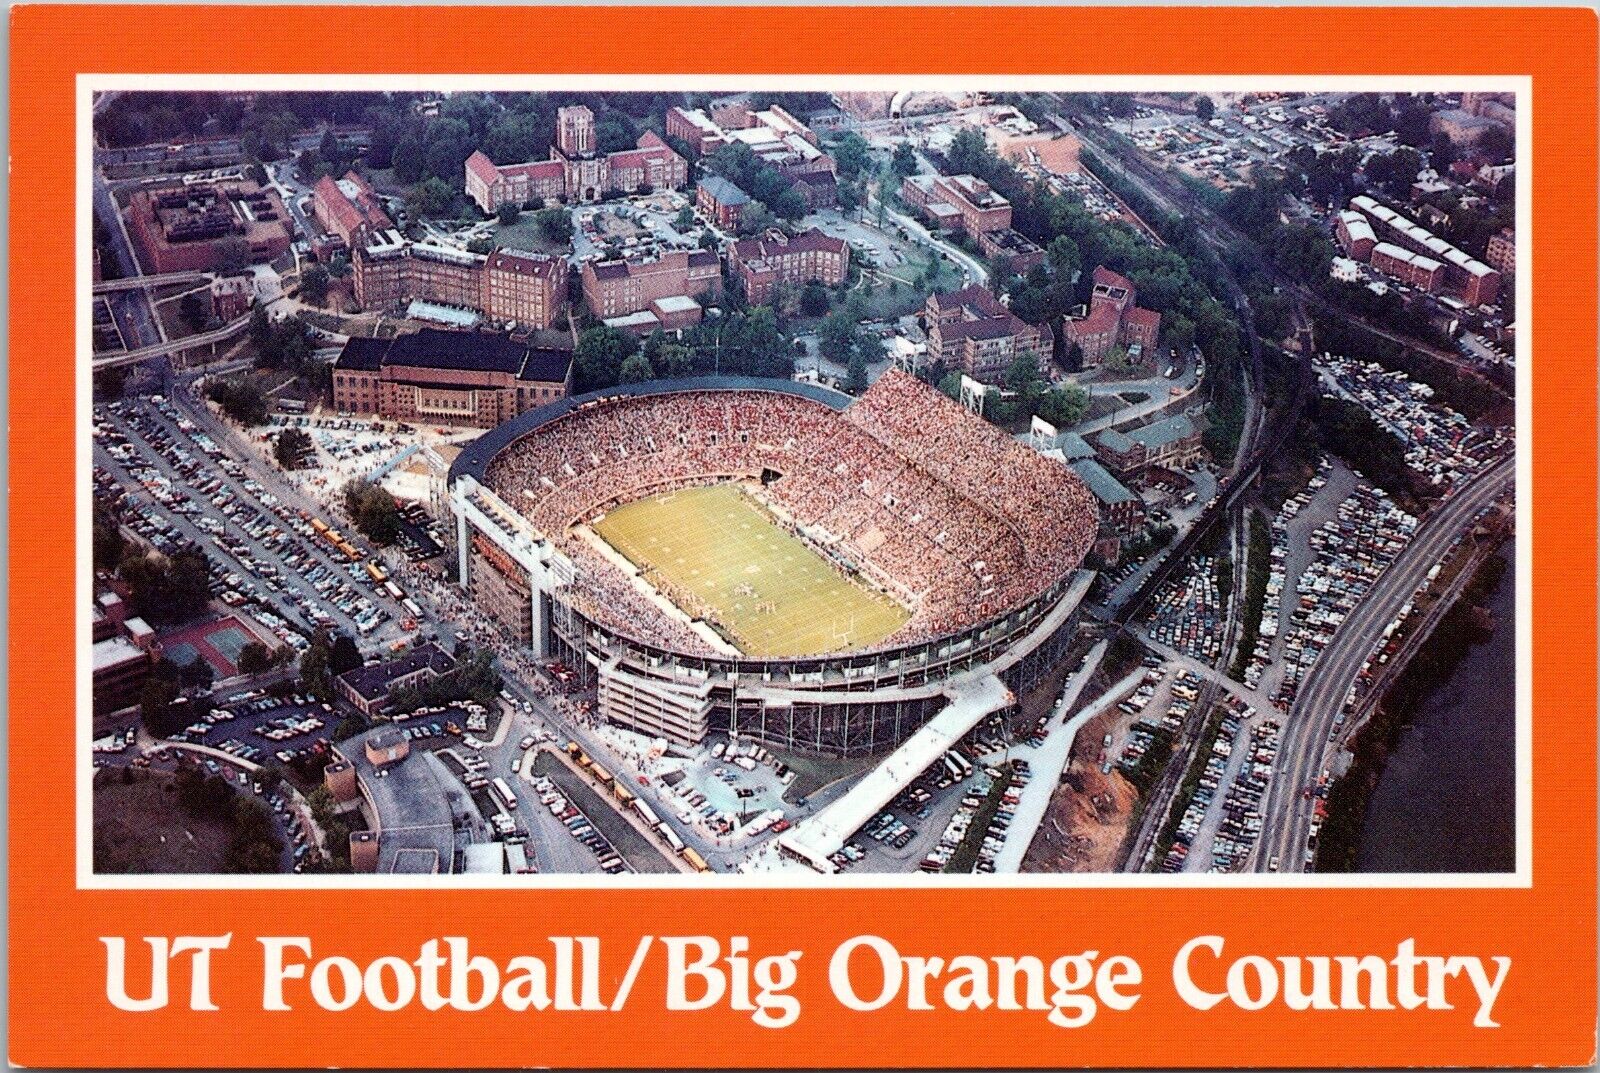 Tennessee Volunteers Football Neyland Stadium - 4x6 Chrome Postcard - c1990s